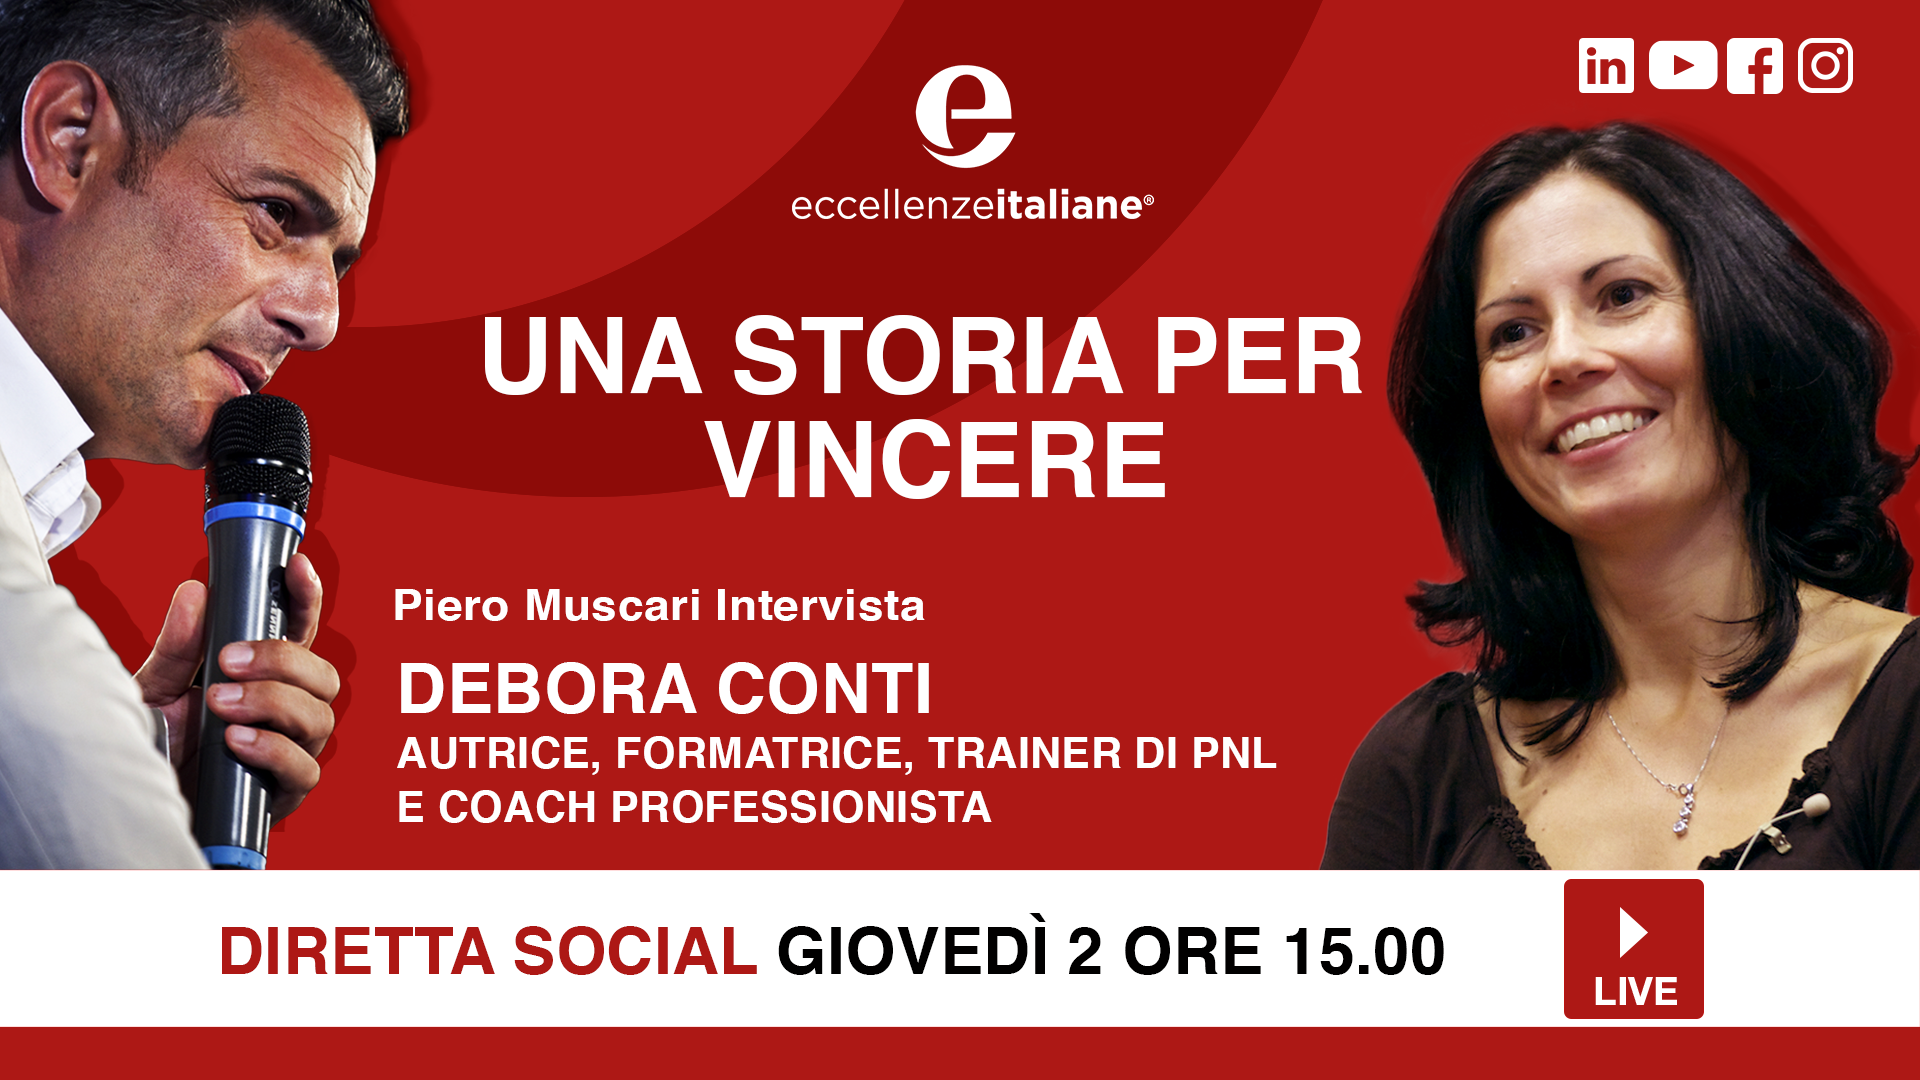 Debora Conti: una storia per vincere! Una storia per imparare! Live giovedì 2 Aprile su facebook.